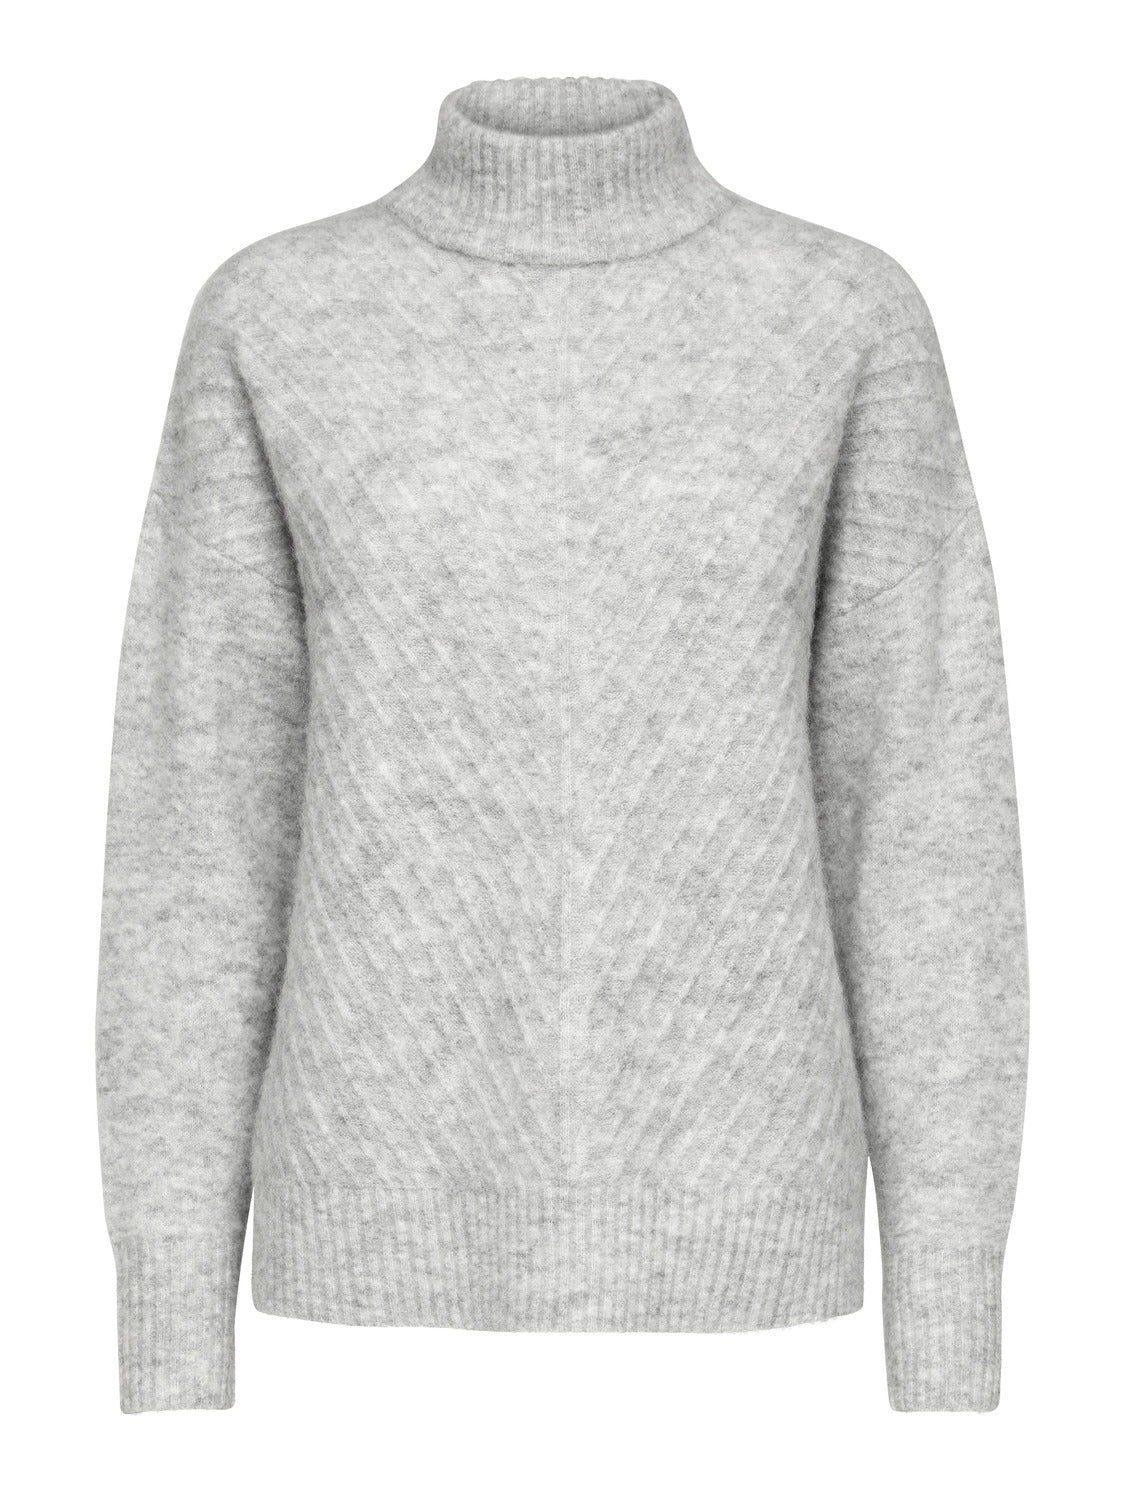 SLFSIF Pullover - Light Grey Melange